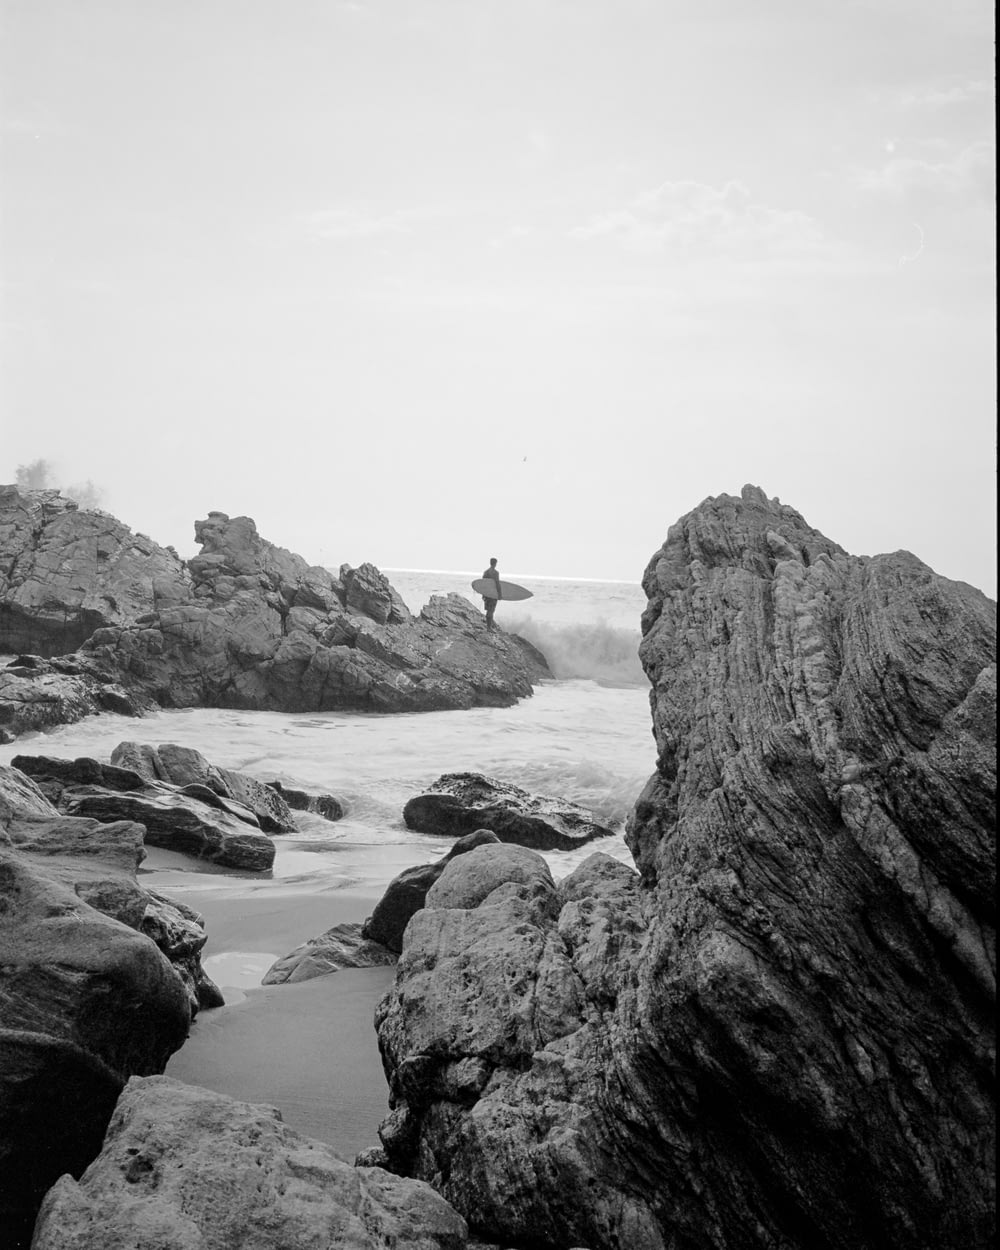 una persona seduta su una roccia nell'acqua